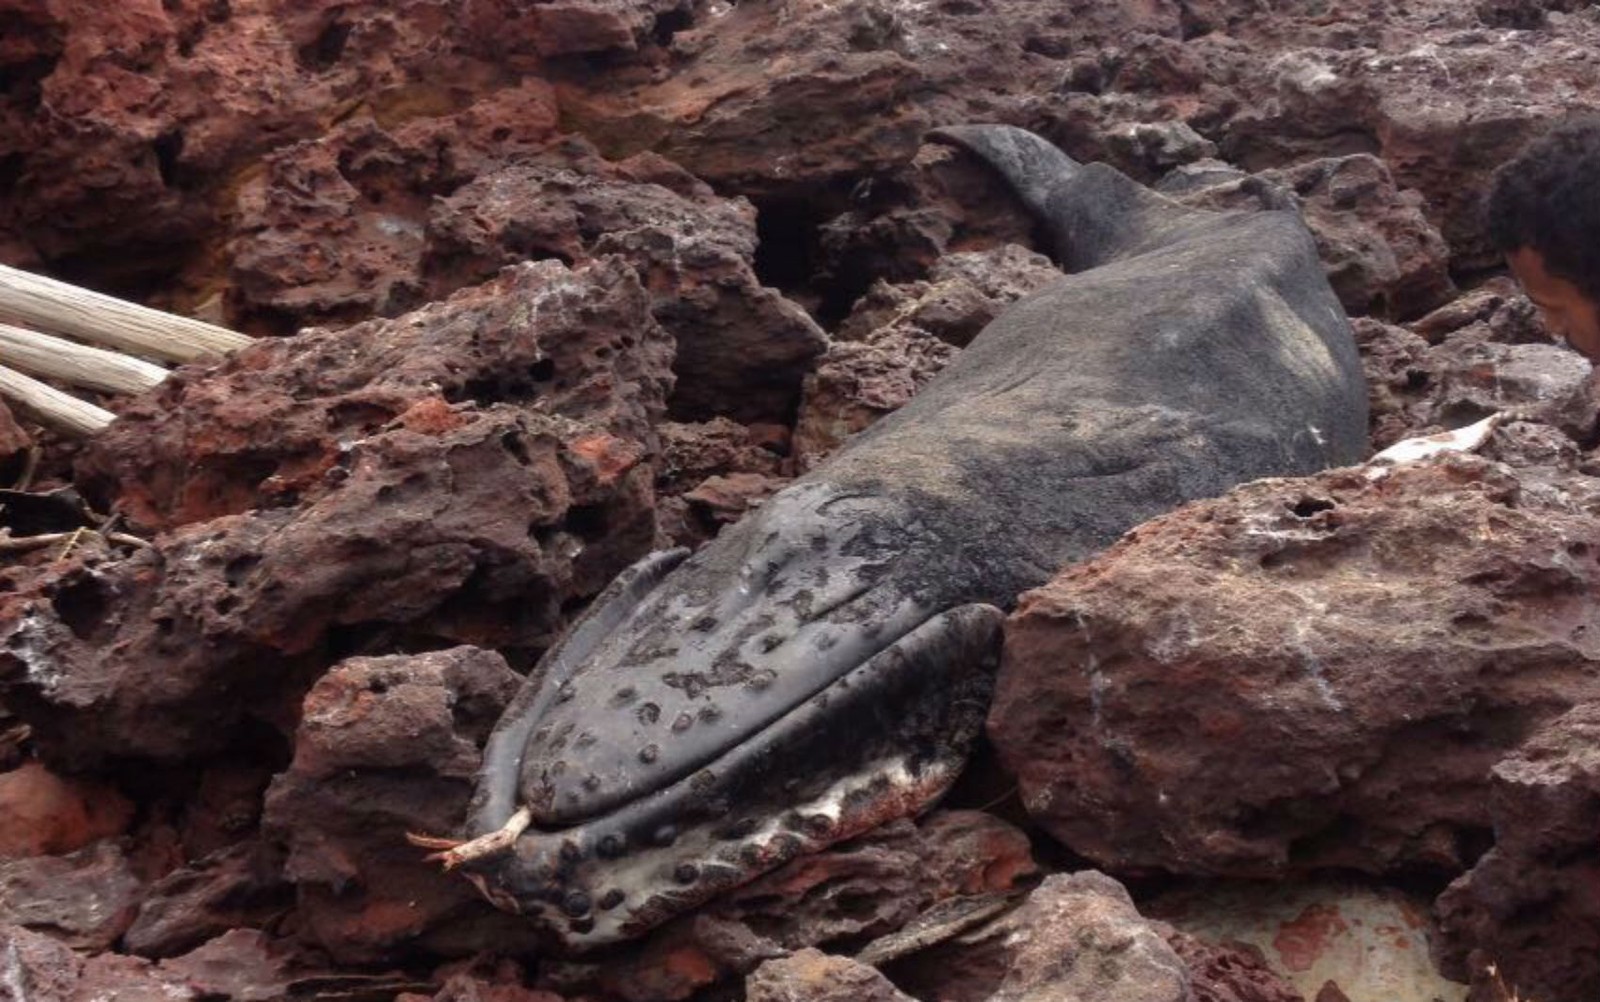 Filhote baleia é encontrado morto em praia do sul da Bahia